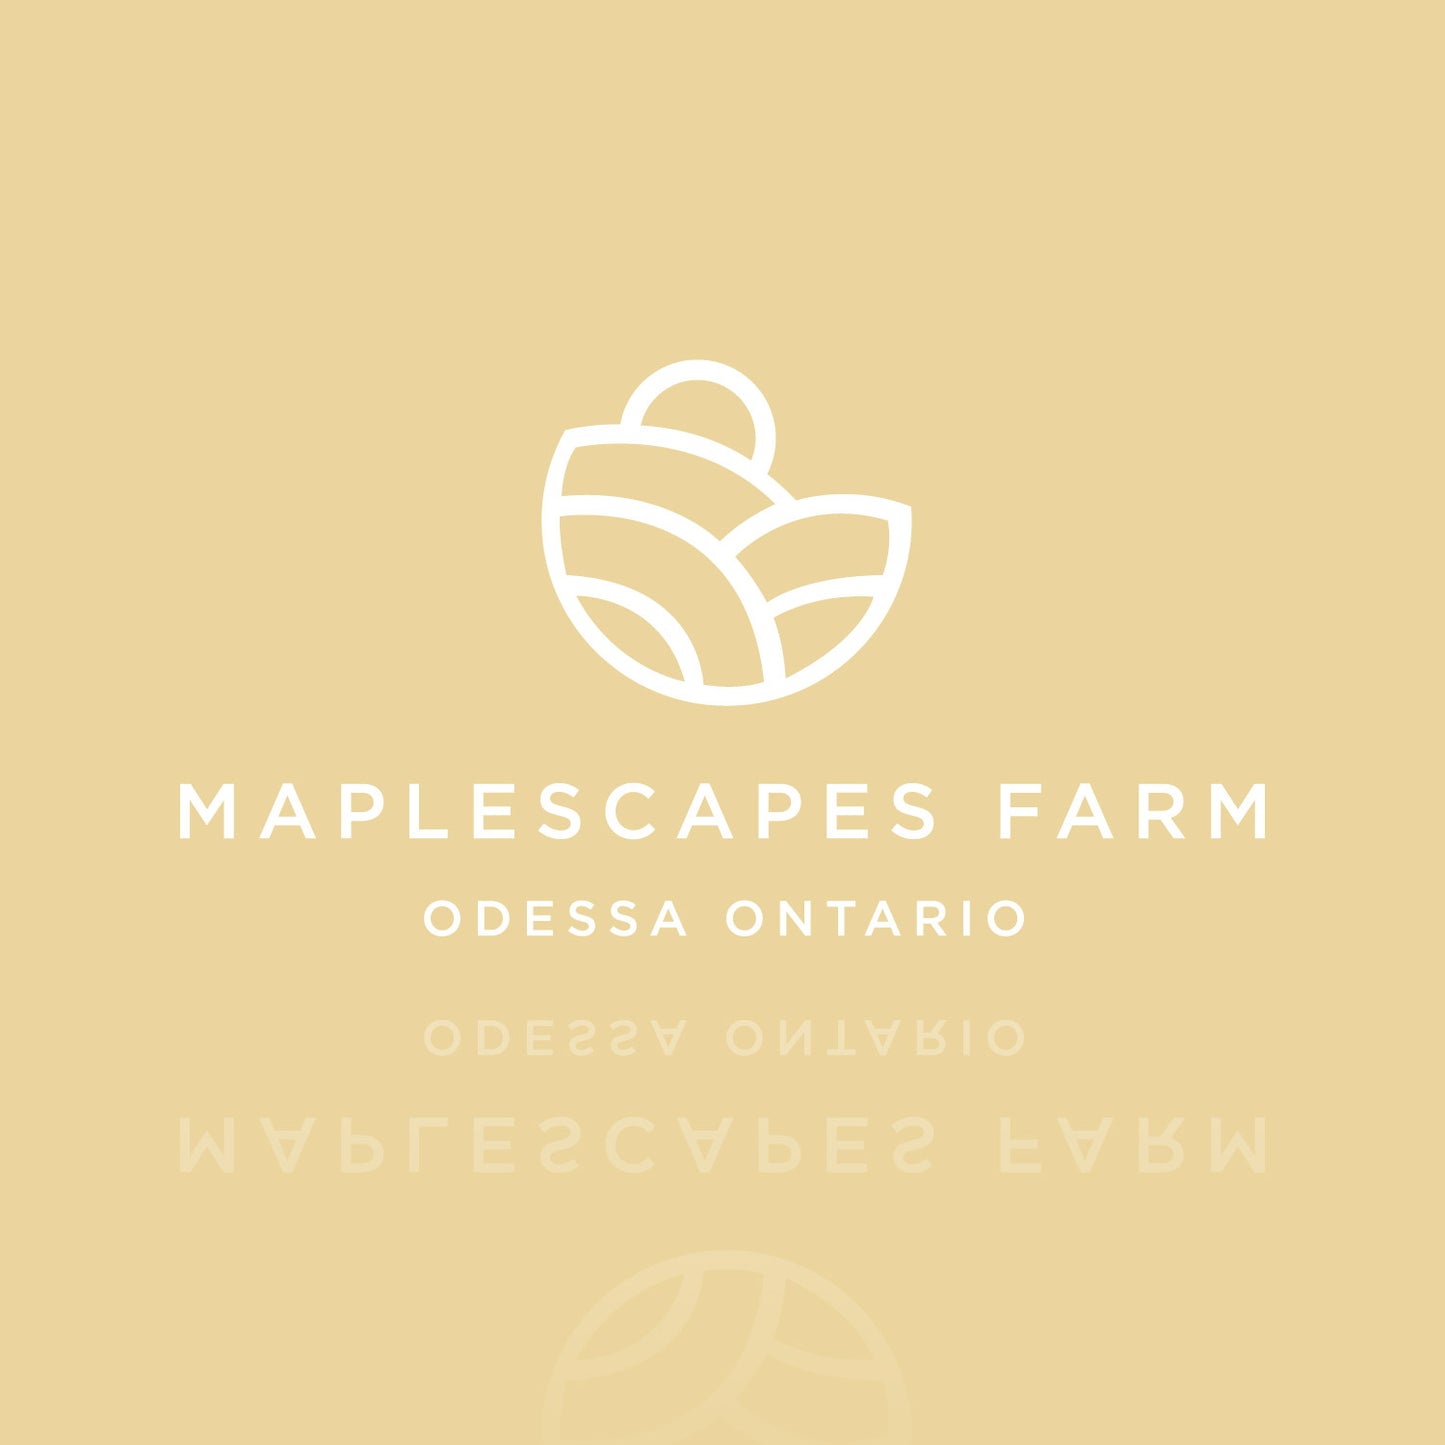 Maplescapes Farm